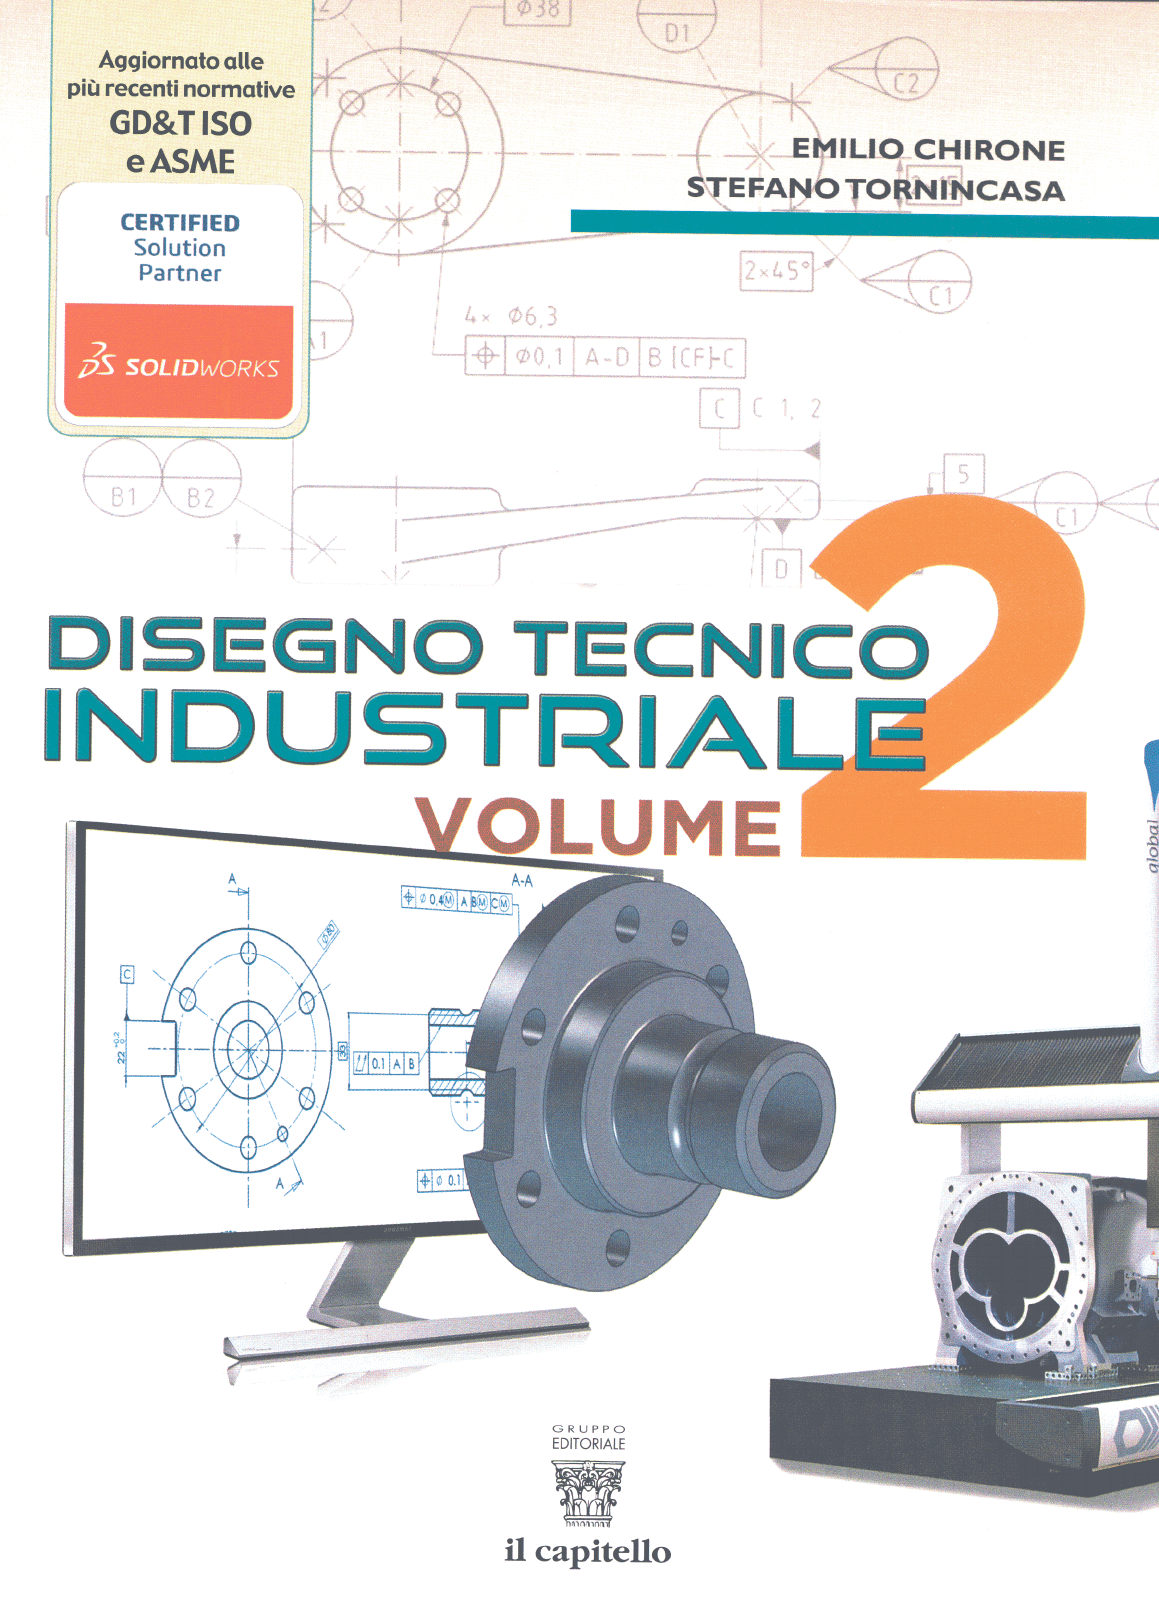 Disegno tecnico industriale chirone tornincasa 2014 pdf